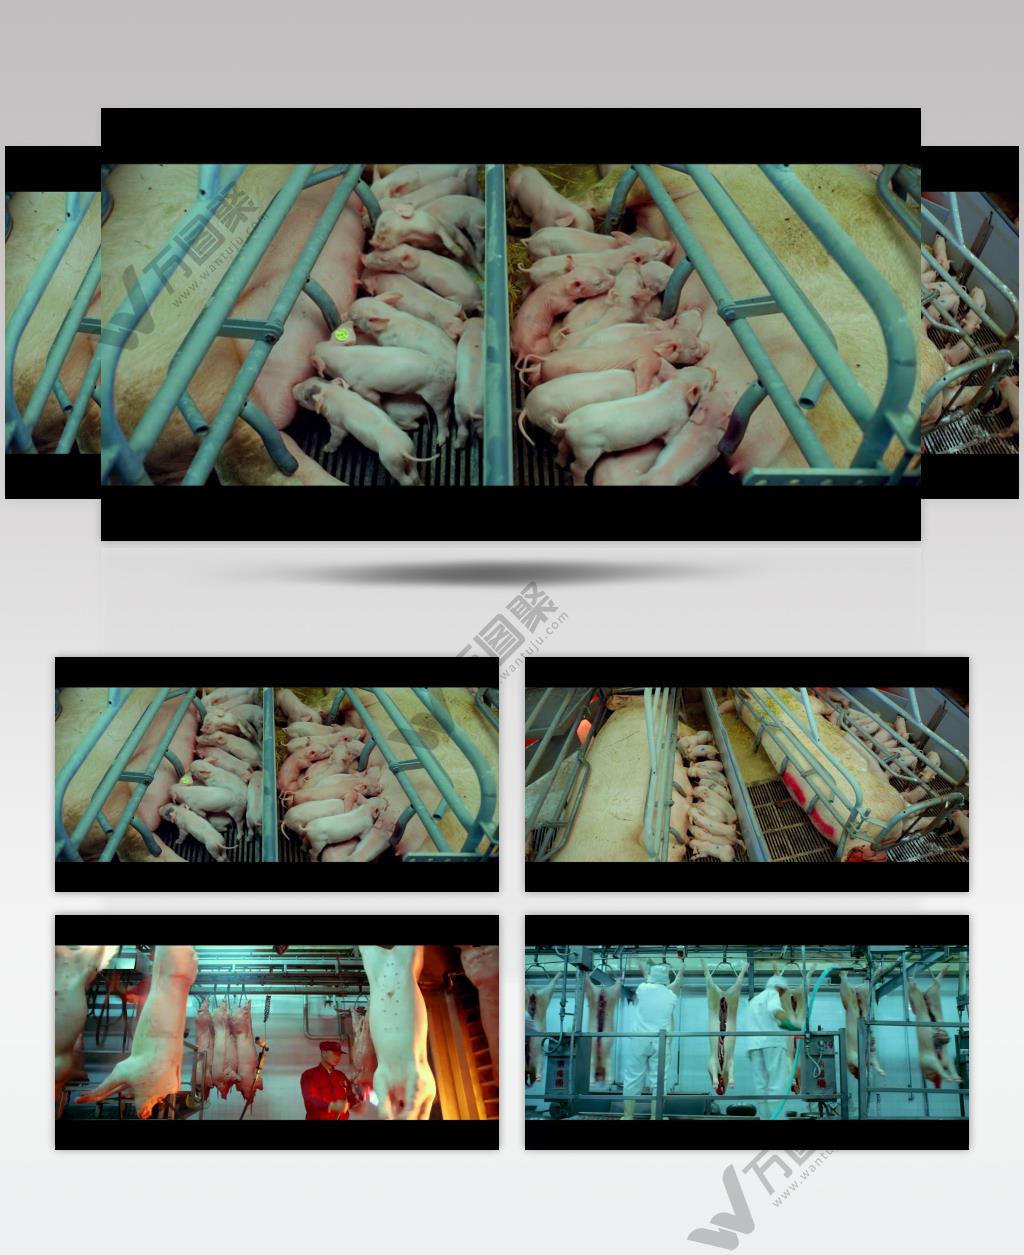 农业畜牧养殖养猪场猪仔小猪吃奶 猪肉加工生产高清实拍视频素材中国实拍视频素材 视频下载中国实拍